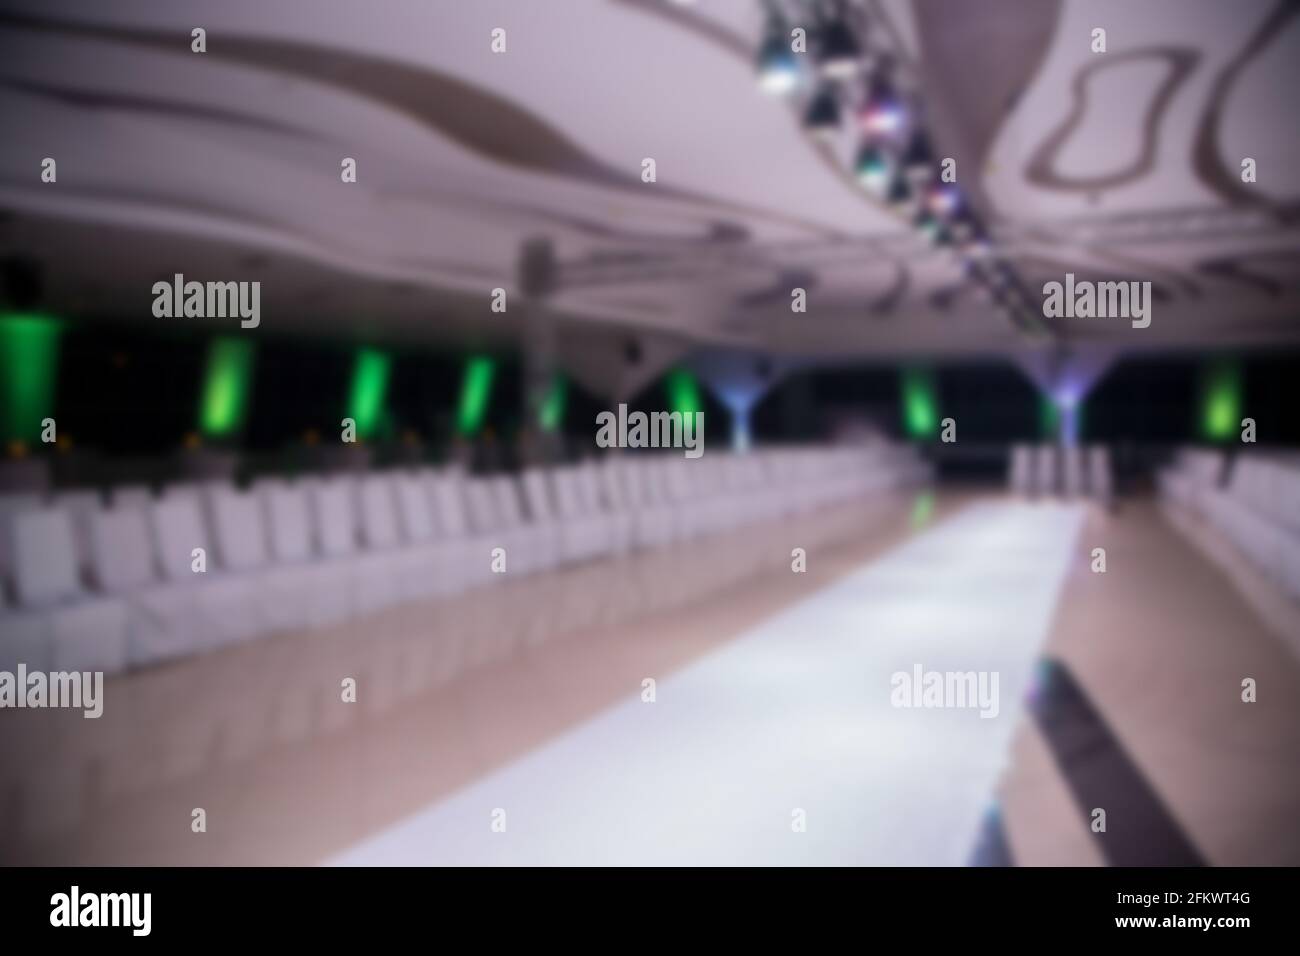 Blurred scene of empty fashion catwalk prepared for fashion show. Stock Photo